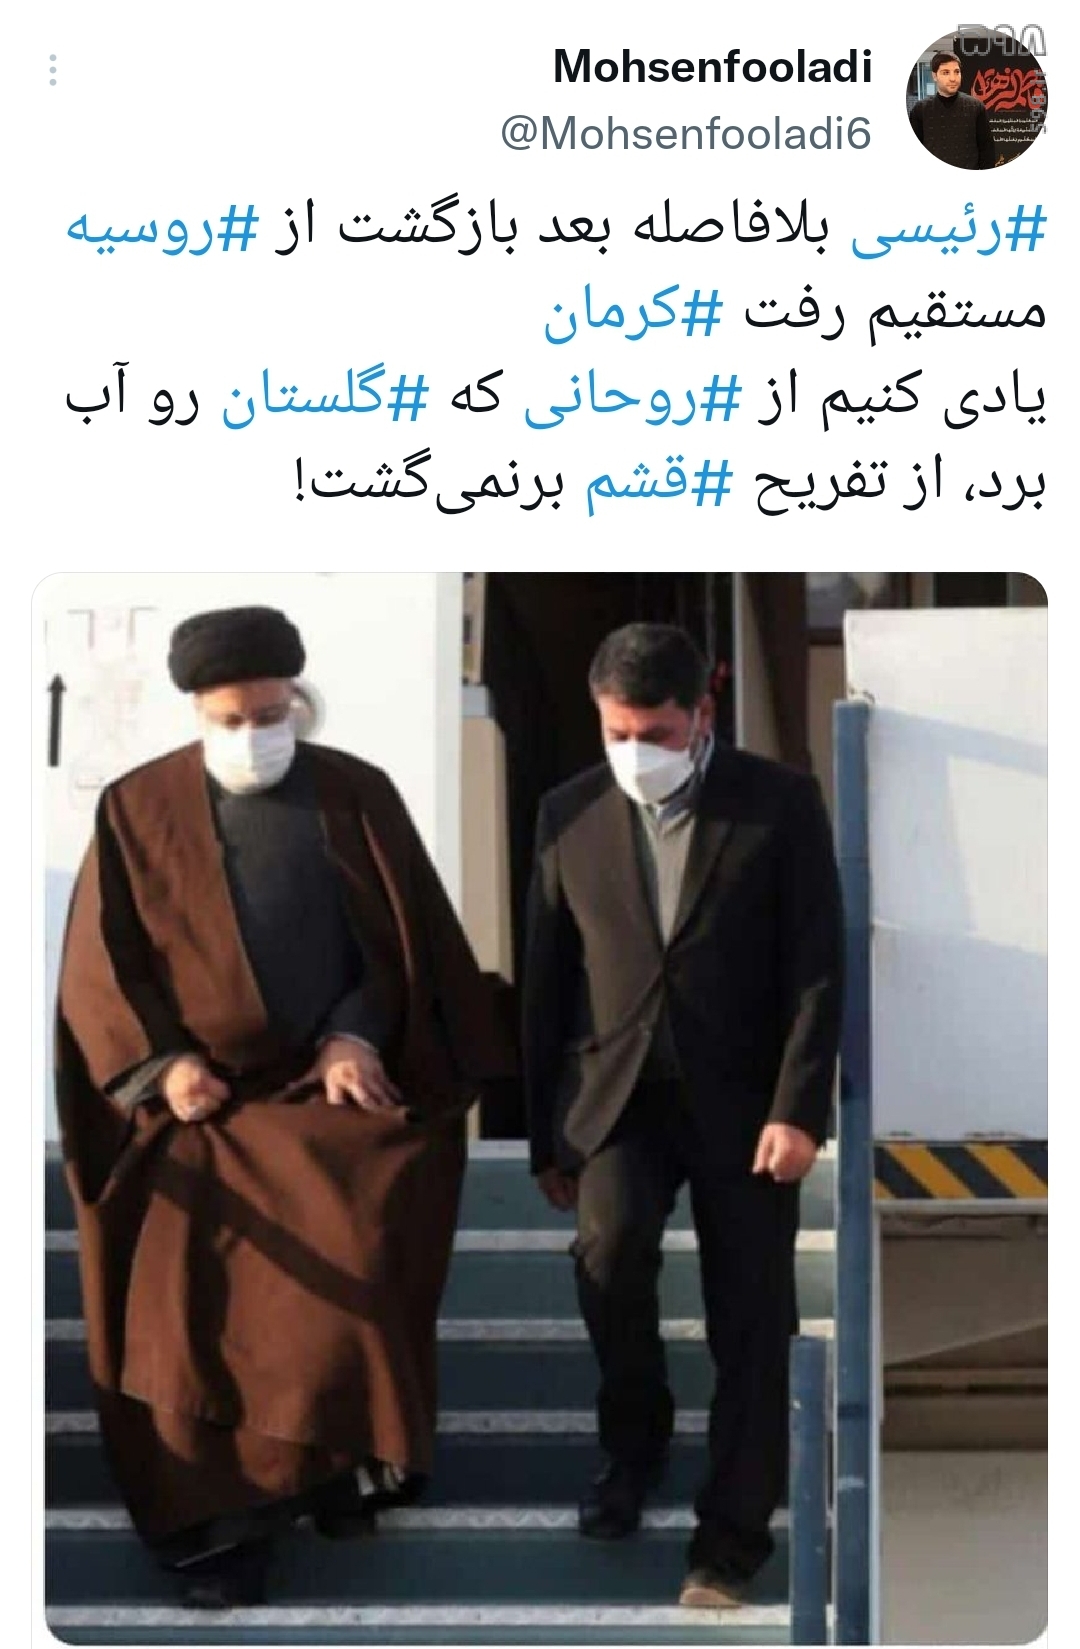 رئیسی خستگی را خسته کرد! / واکنش کاربران فضای مجازی به سفر رئیسی به کرمان